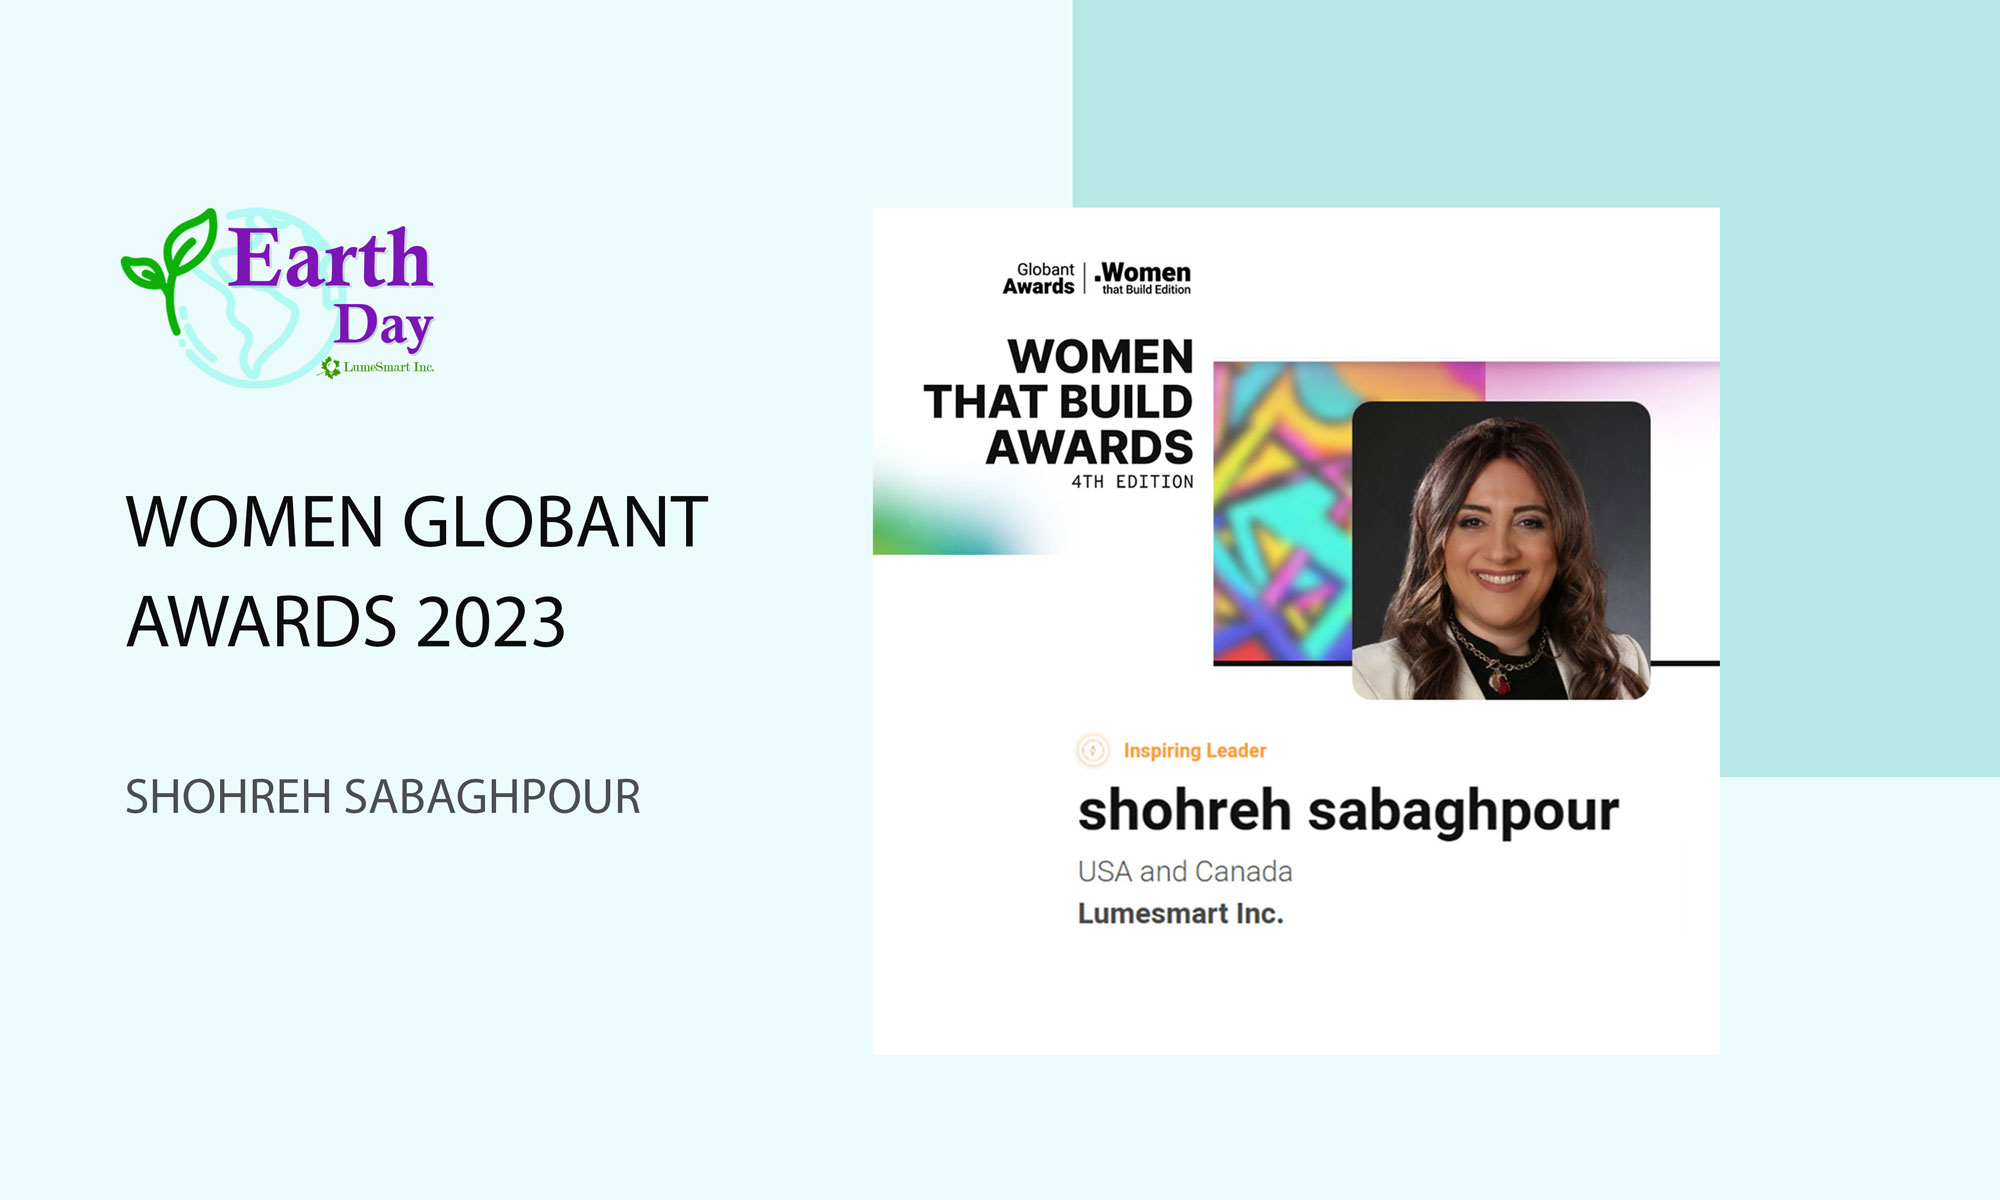 Women-Globant-Awards-2023-shohreh-sabaghpourr